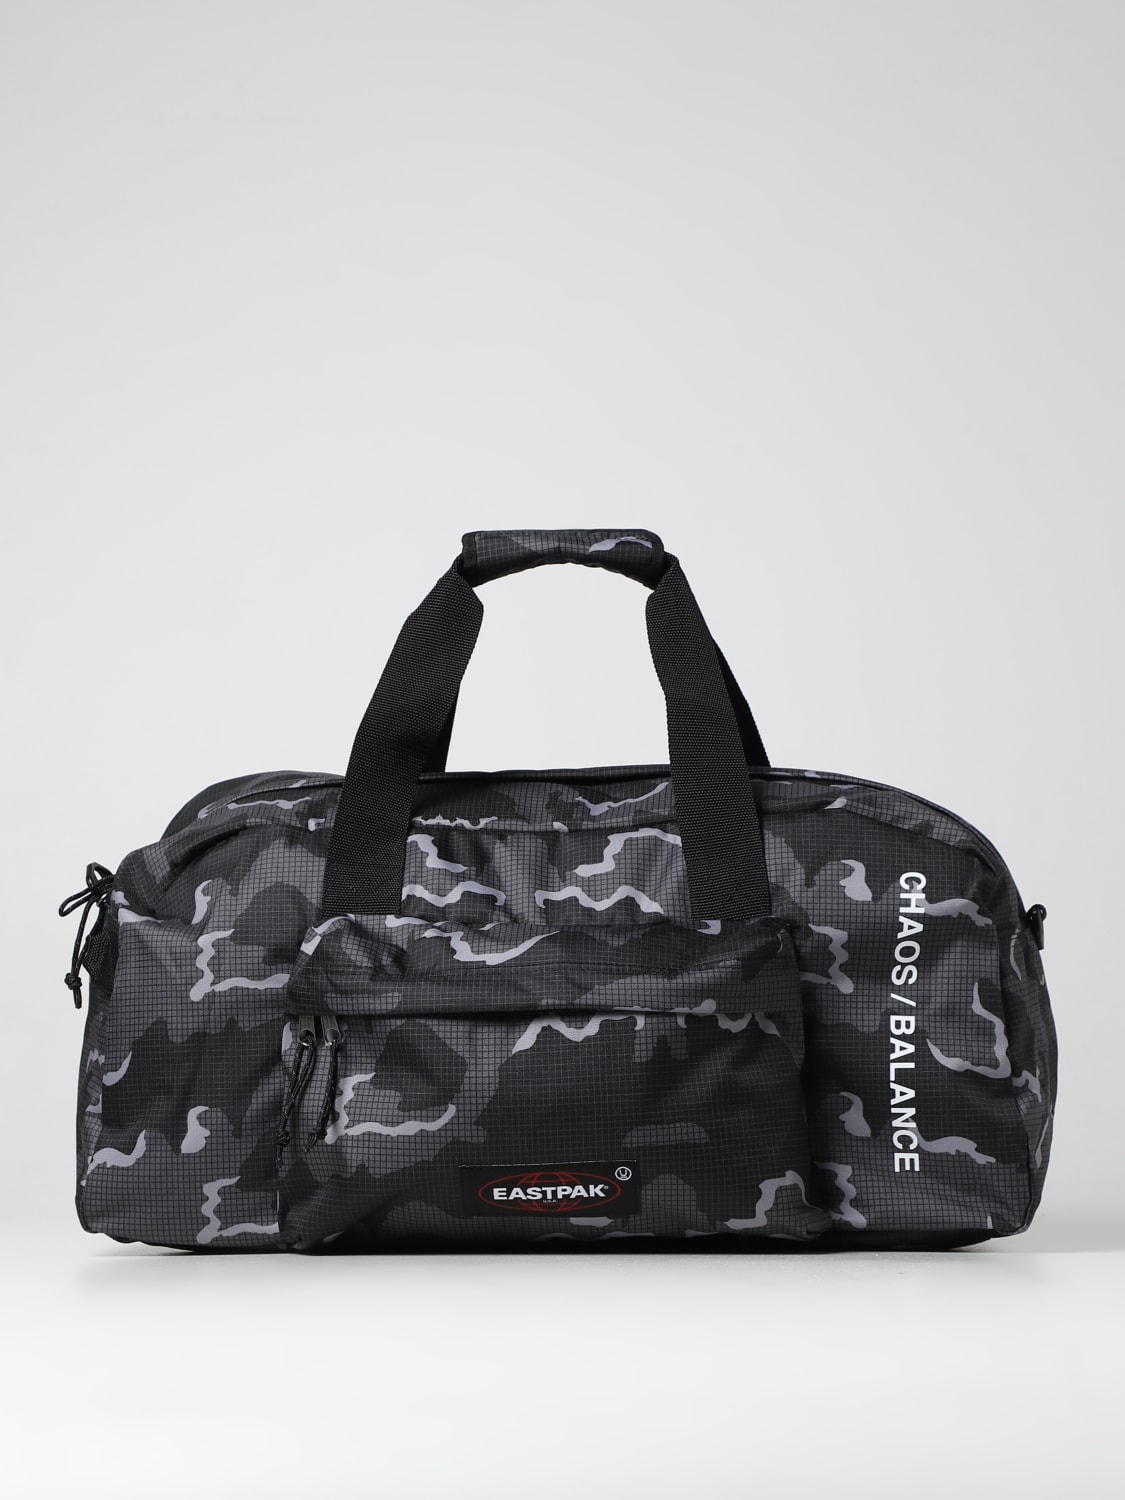 Veranderlijk barrière Bandiet EASTPAK: travel bag for man - Black | Eastpak travel bag EK0A5BCV online on  GIGLIO.COM